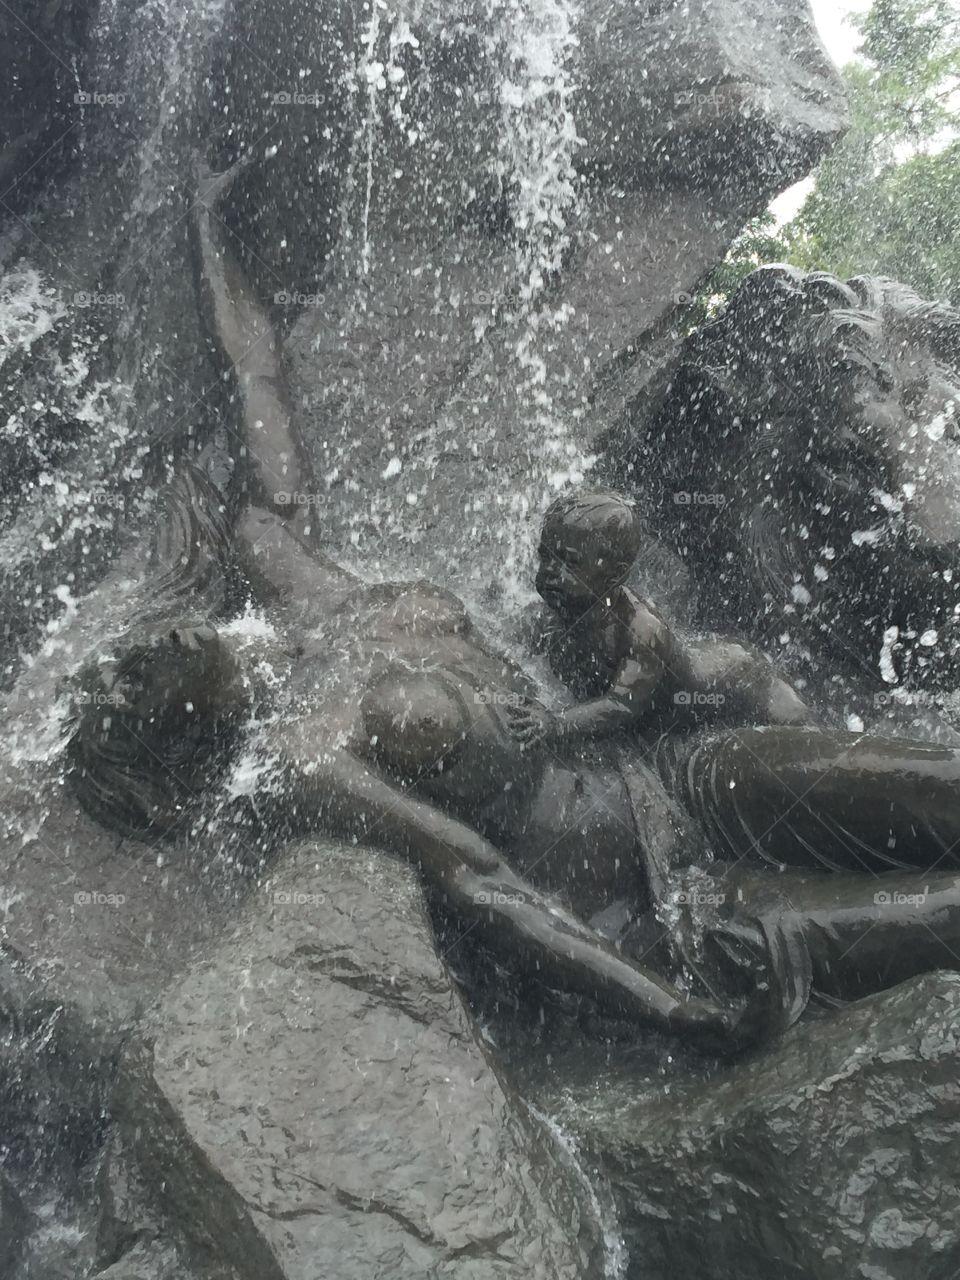 Sculpture "Flood"